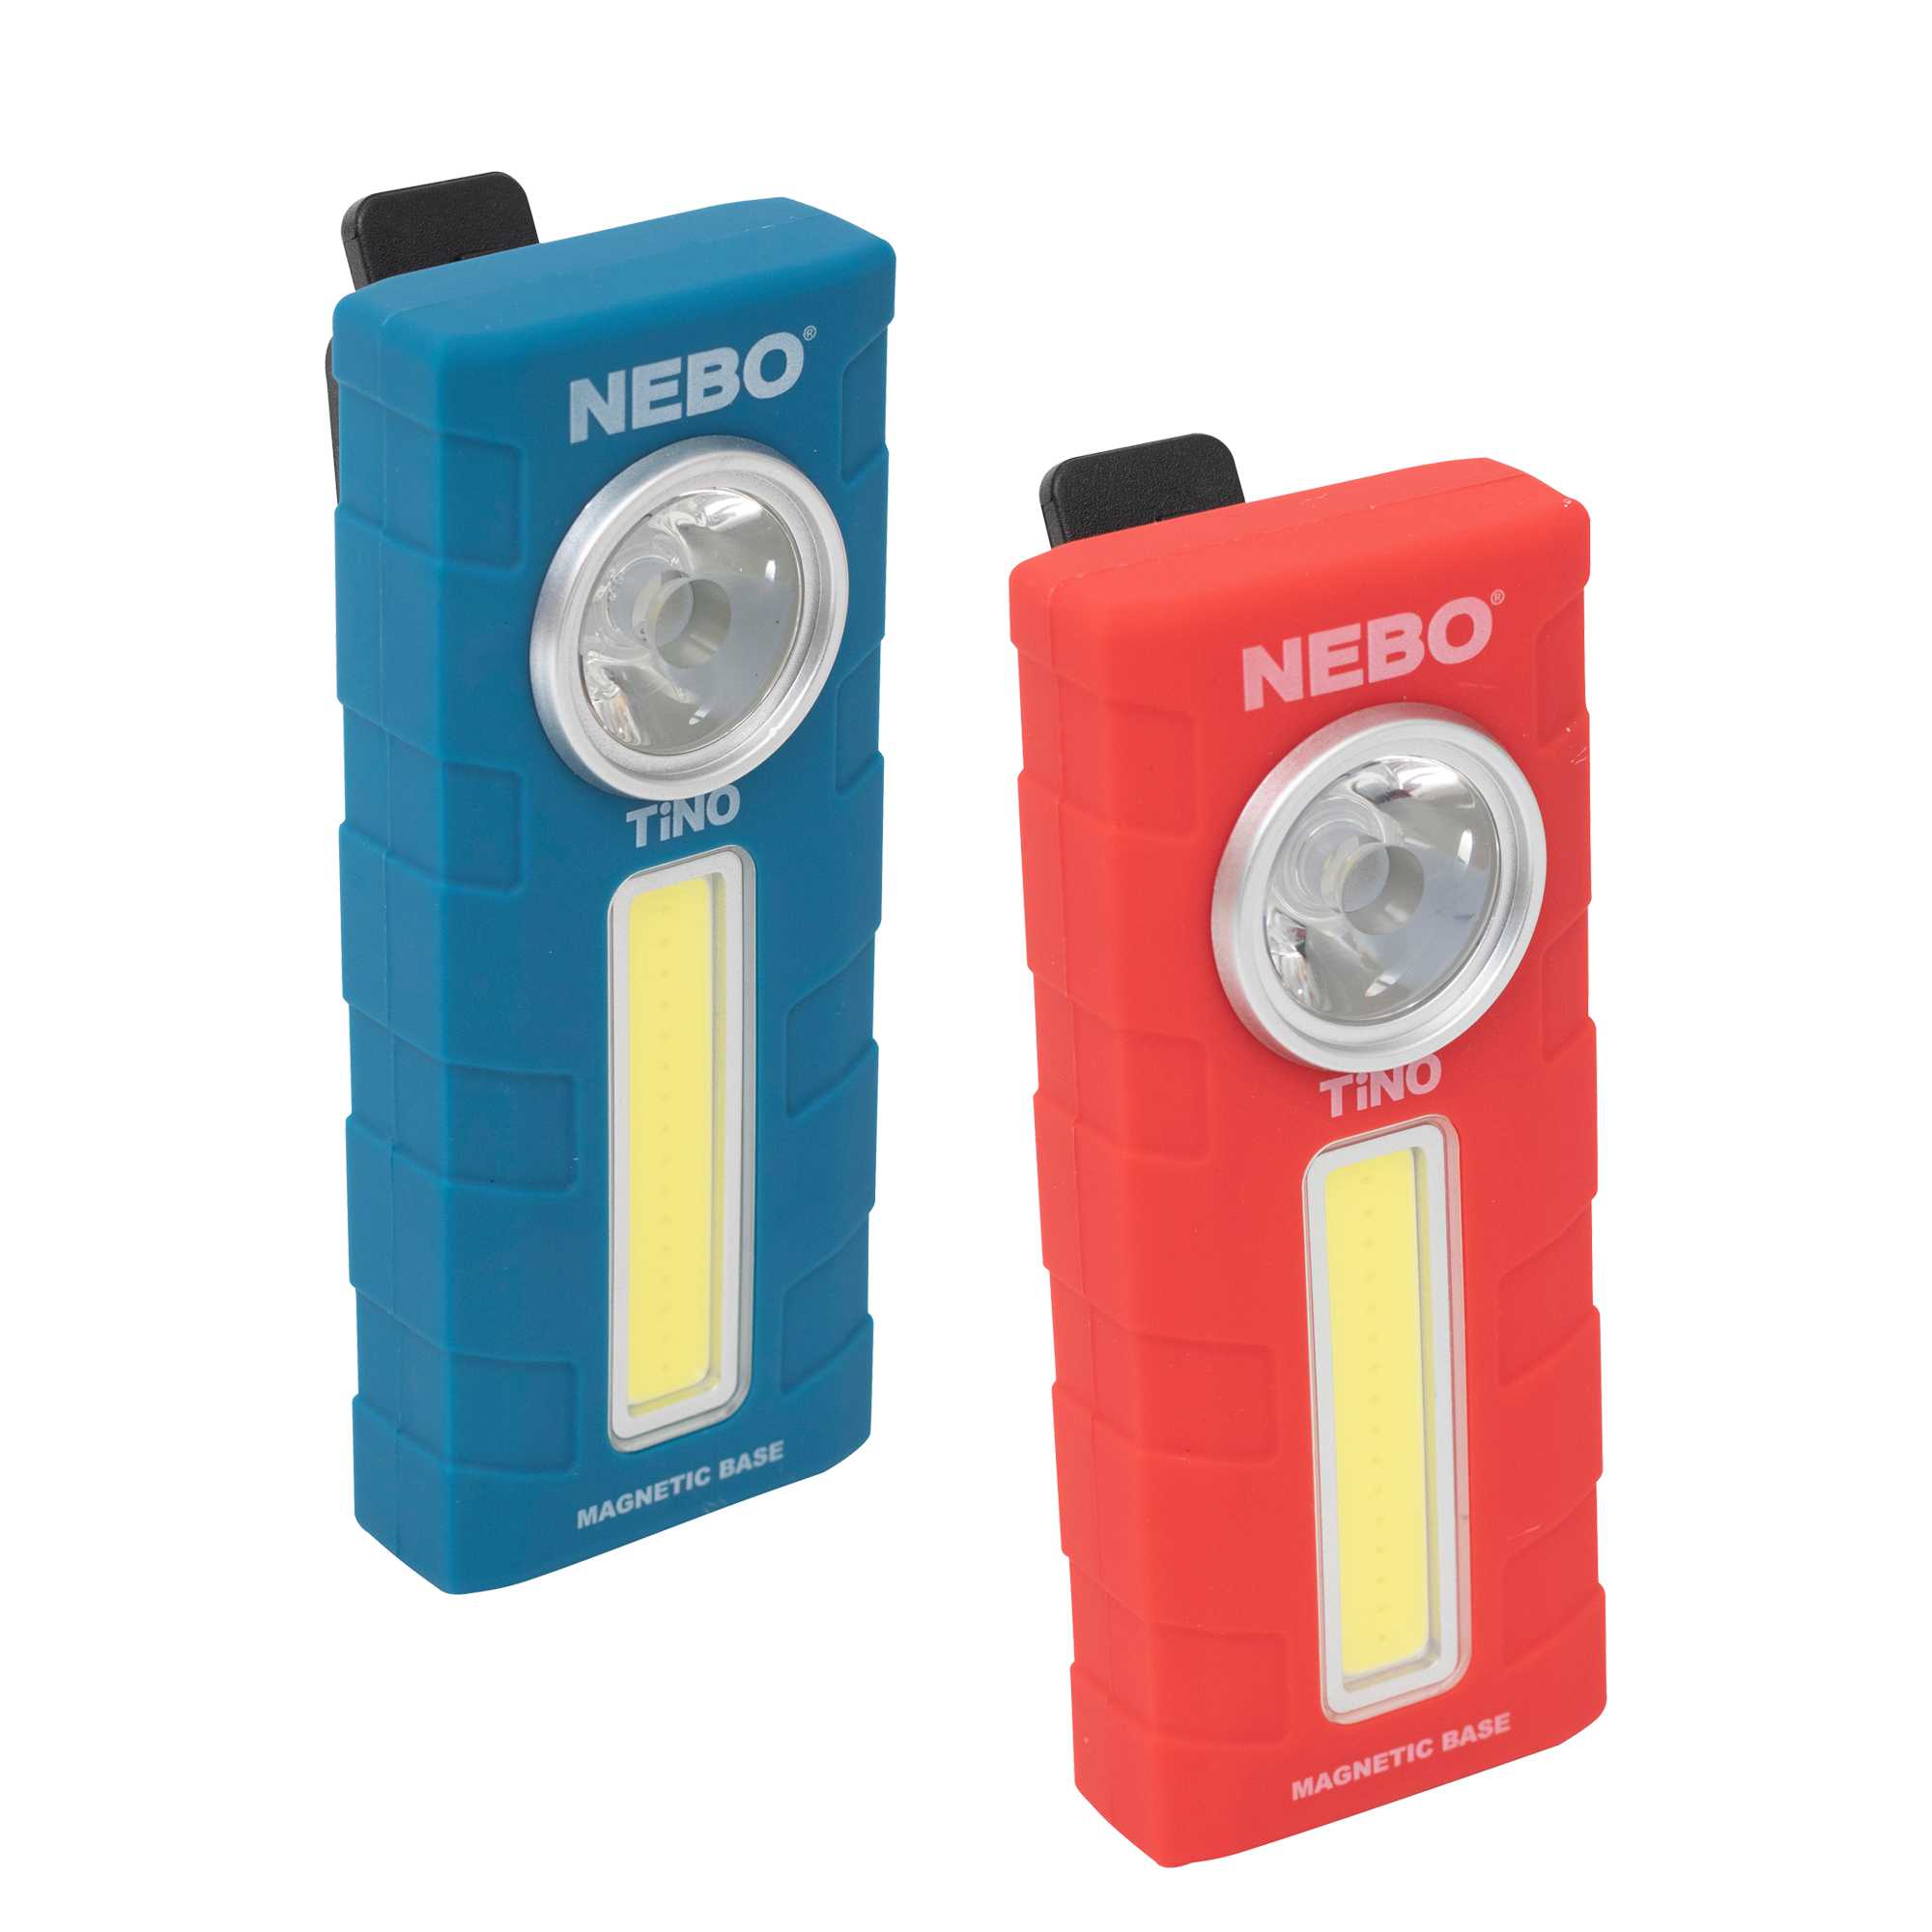 NEBO TINO Slim Pocket 2 in 1 Taschenlampe